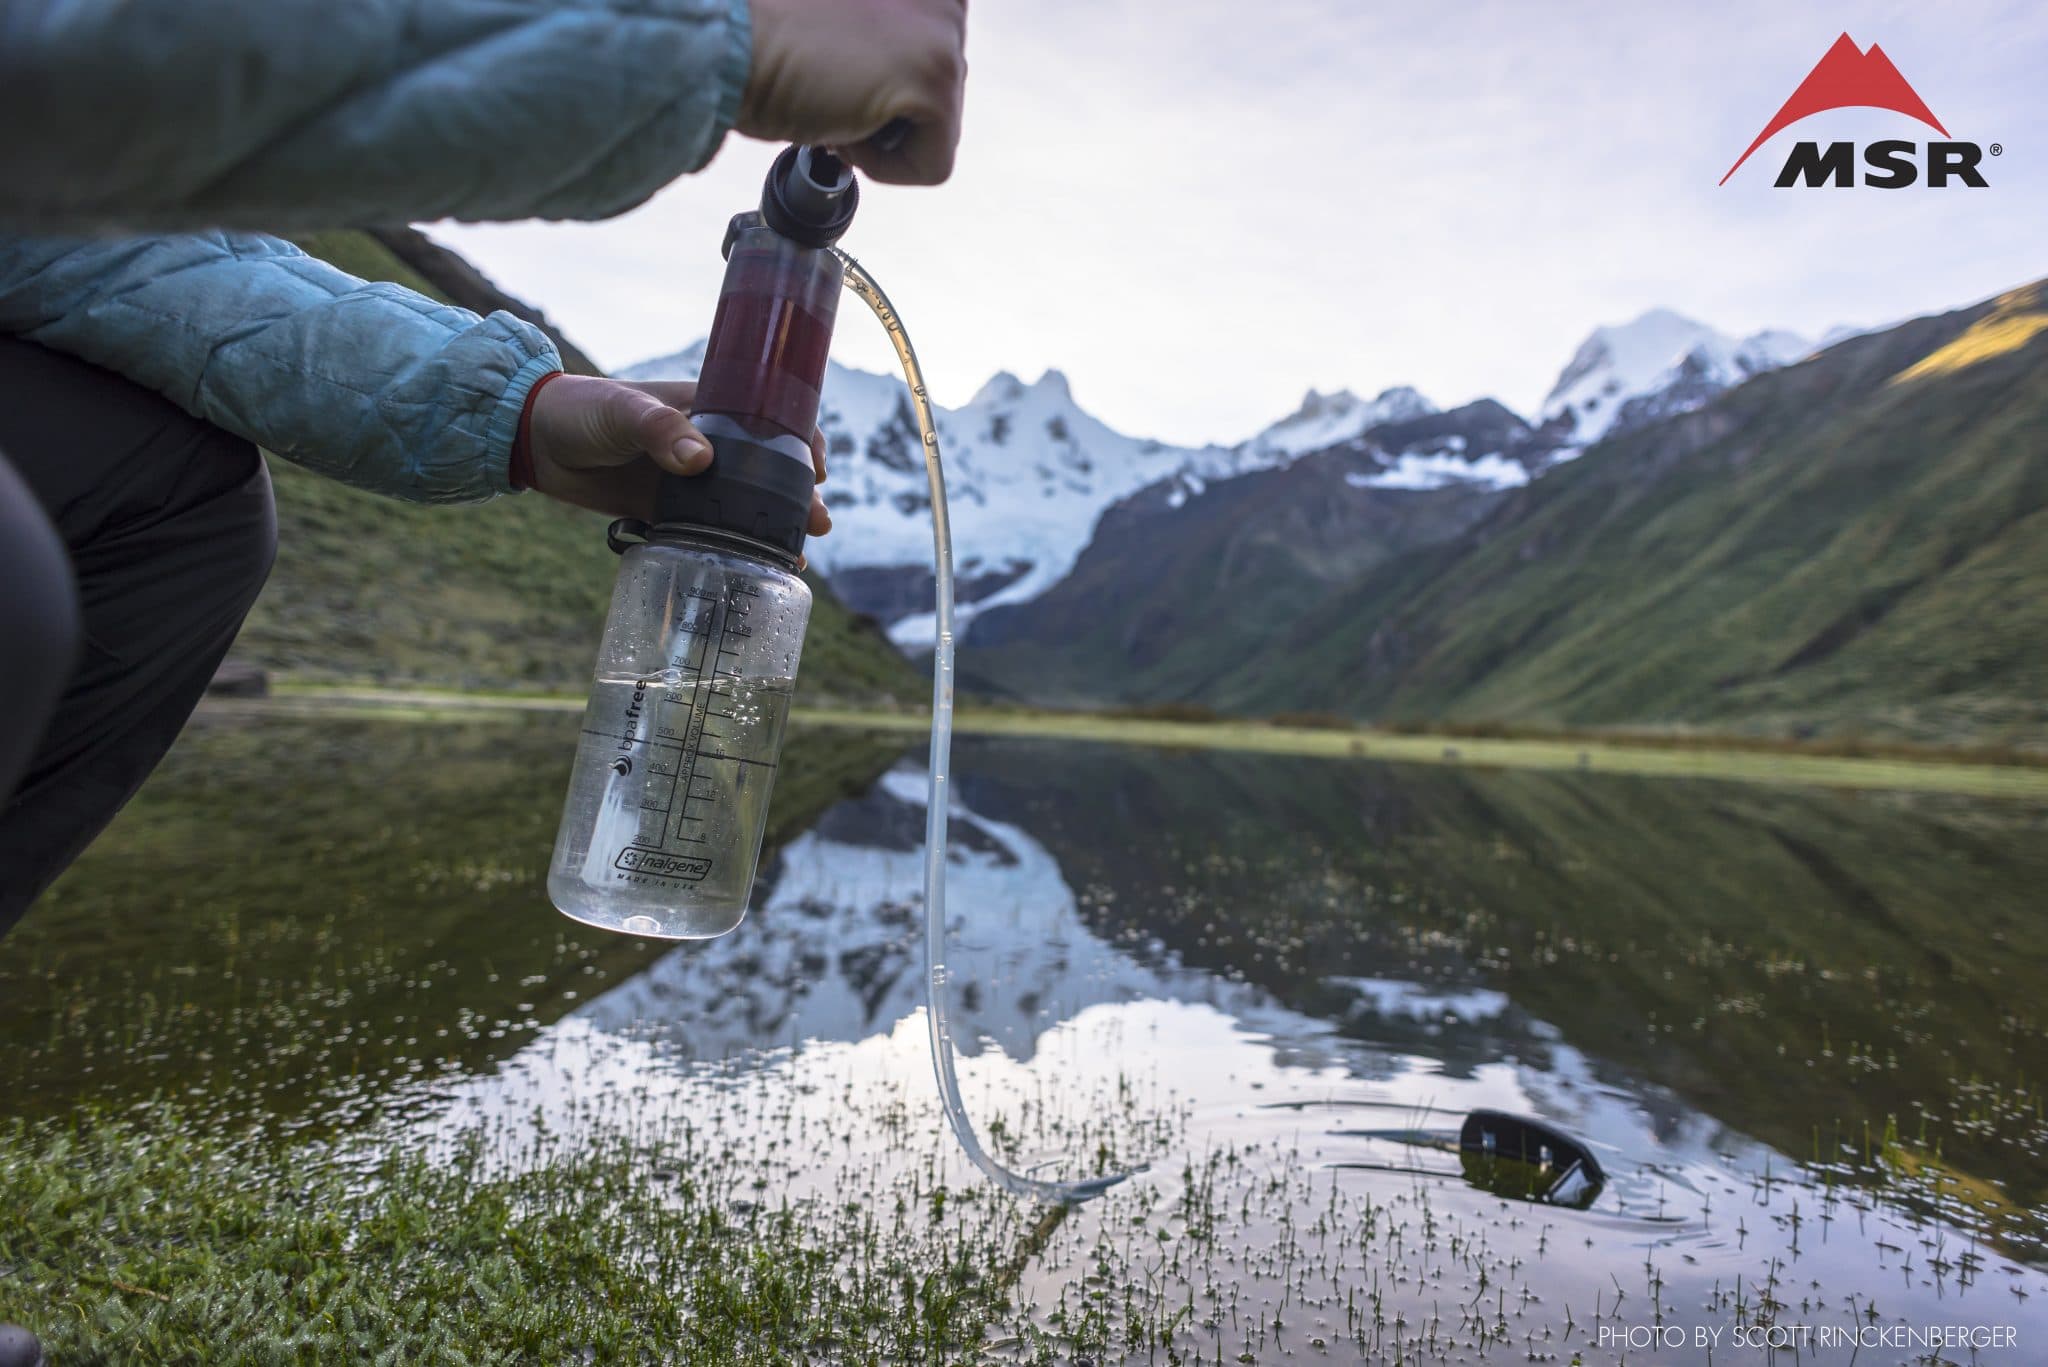 Comment traiter et filtrer l'eau en randonnée ?